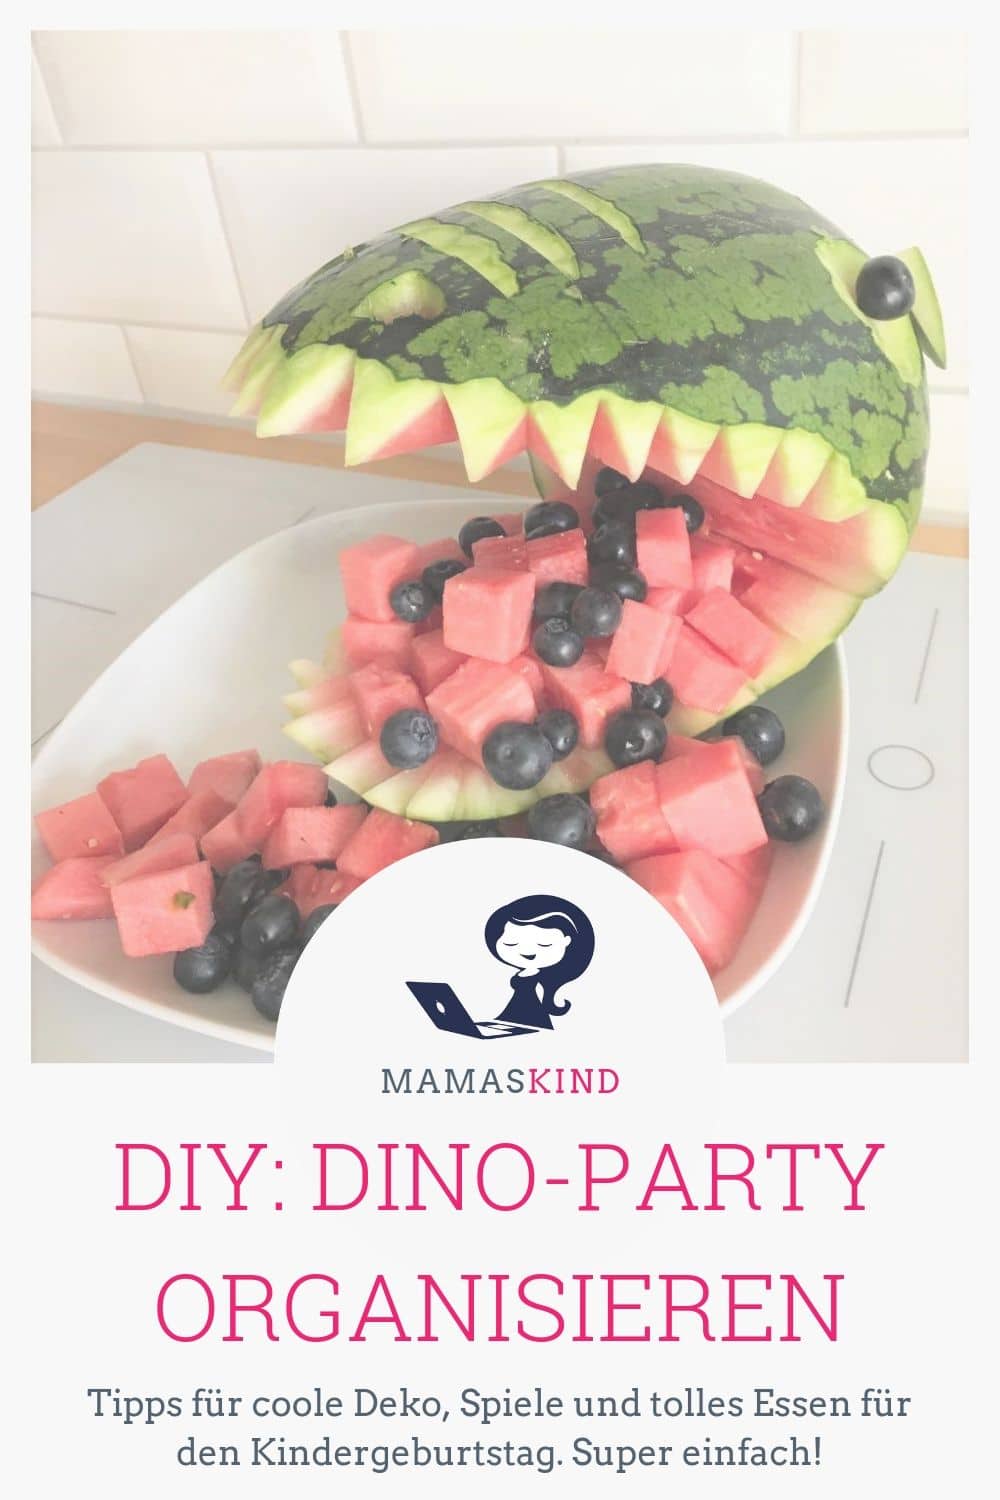 Easy: unsere DIY Dinosaurier-Party mit vielen Basteleien zum einfachen Nachmachen. Die T-Rex-Wassermelone ist der Knaller! - Mehr Infos und Tipps gibt es auf Mamaskind.de